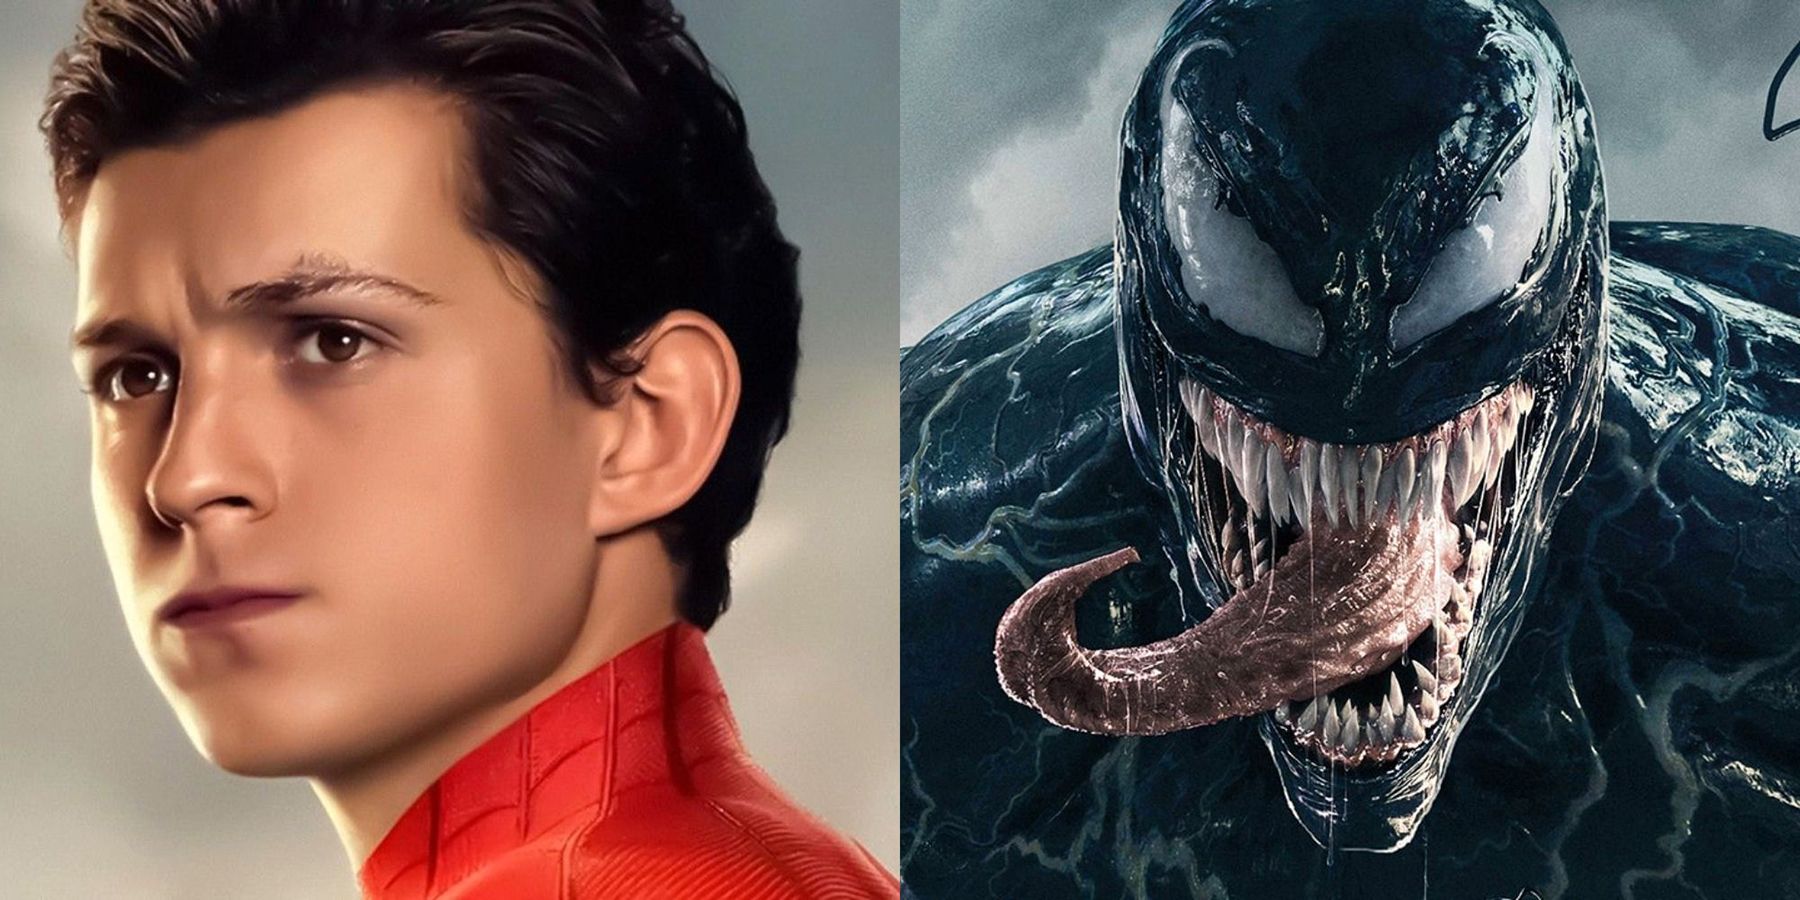 Spider-Man Toma Hollanda otrzymuje swój czarny garnitur w tej fanowskiej sztuce „Venomverse”